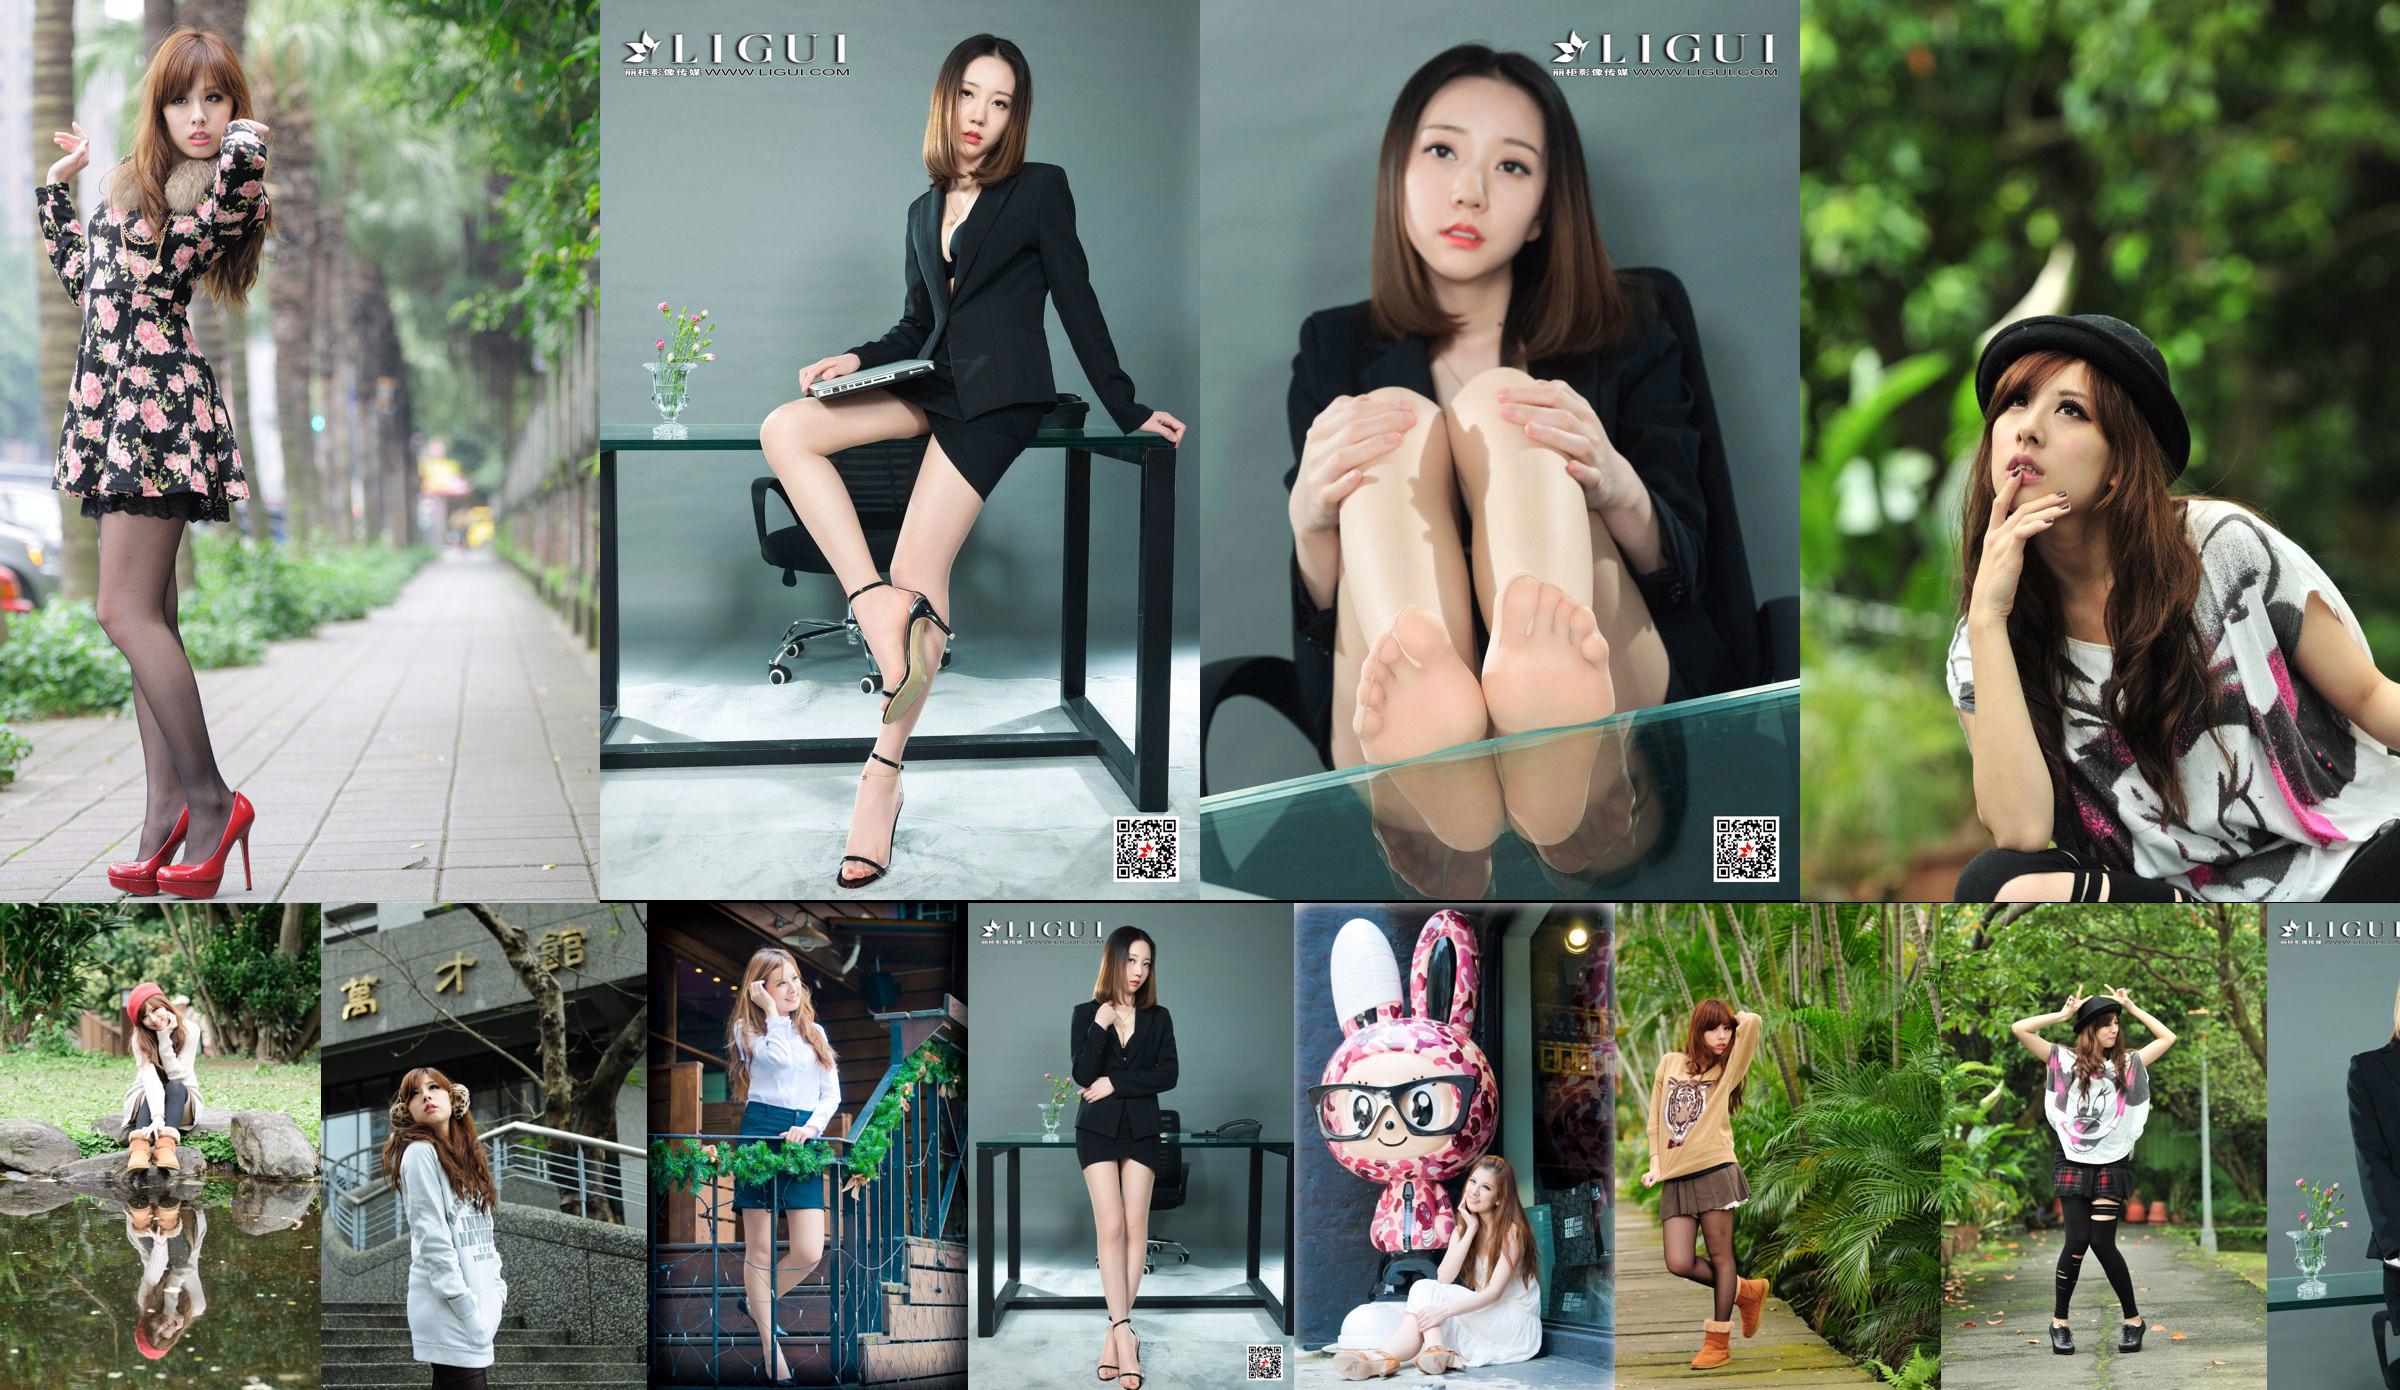 La modelo de belleza taiwanesa Xiaomi Kate su foto fresca en la calle No.5c8aa5 Página 2